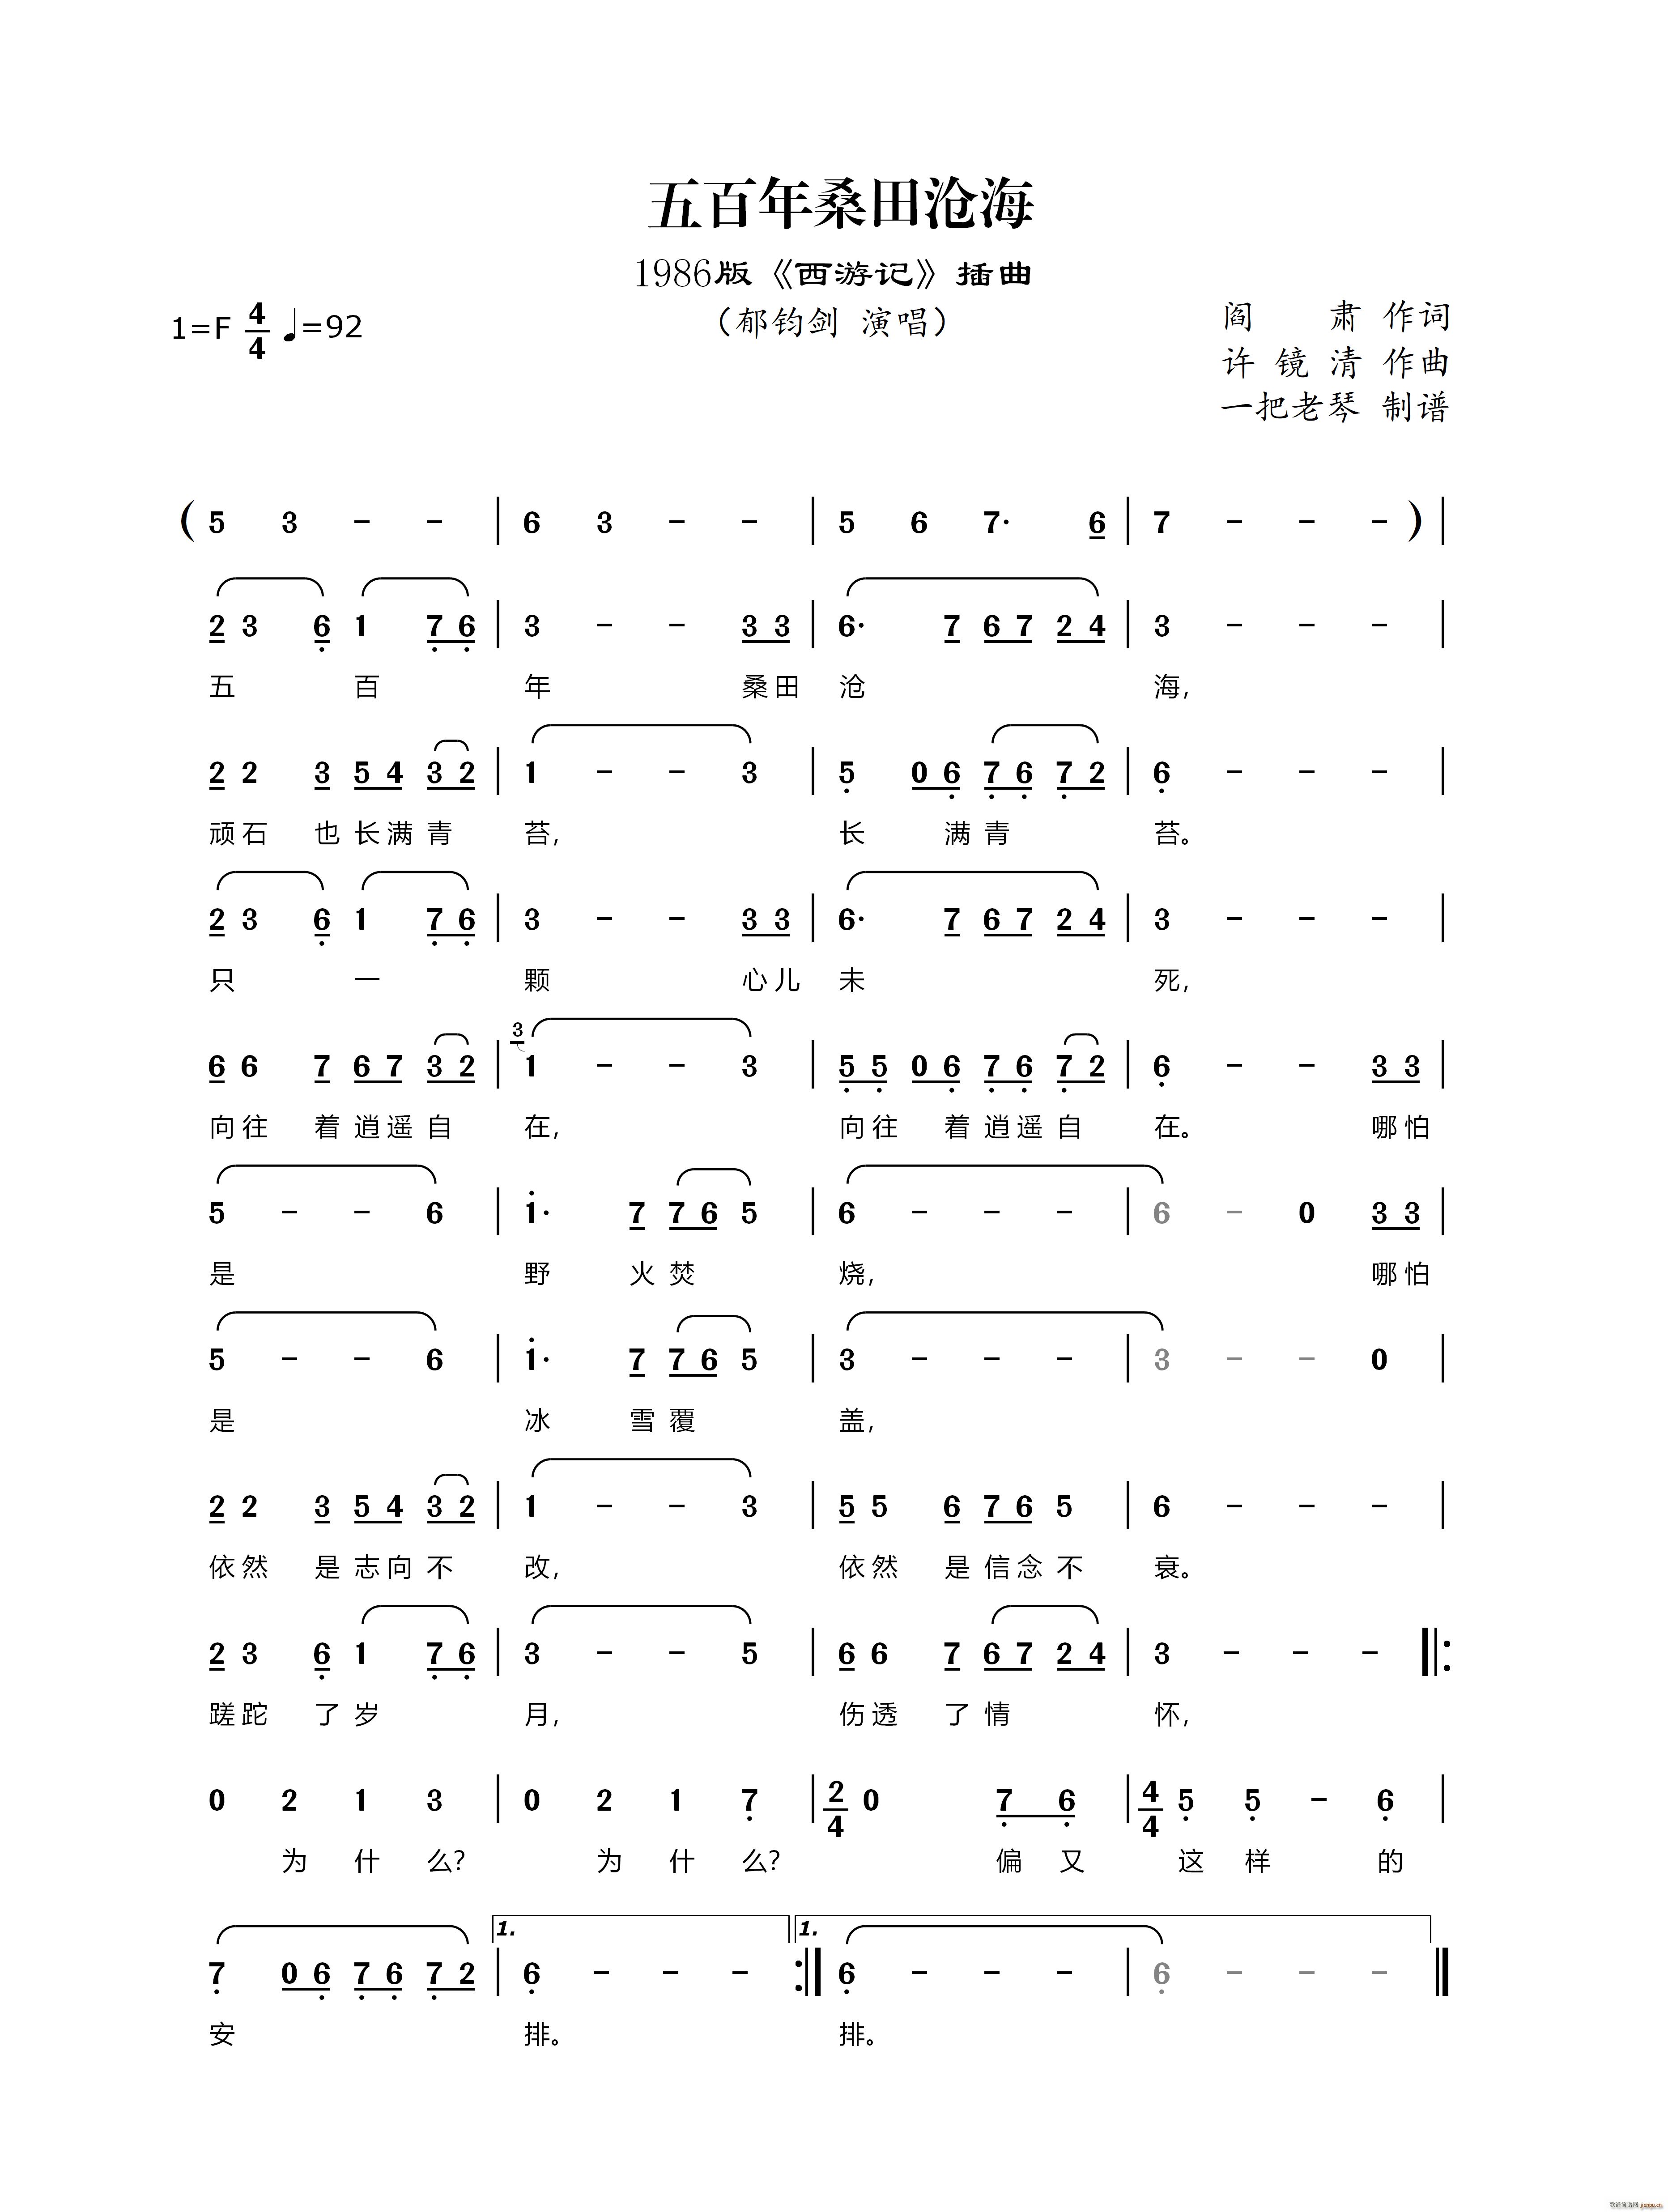 五百年桑田沧海 1986版 西游记 插曲(十字及以上)1